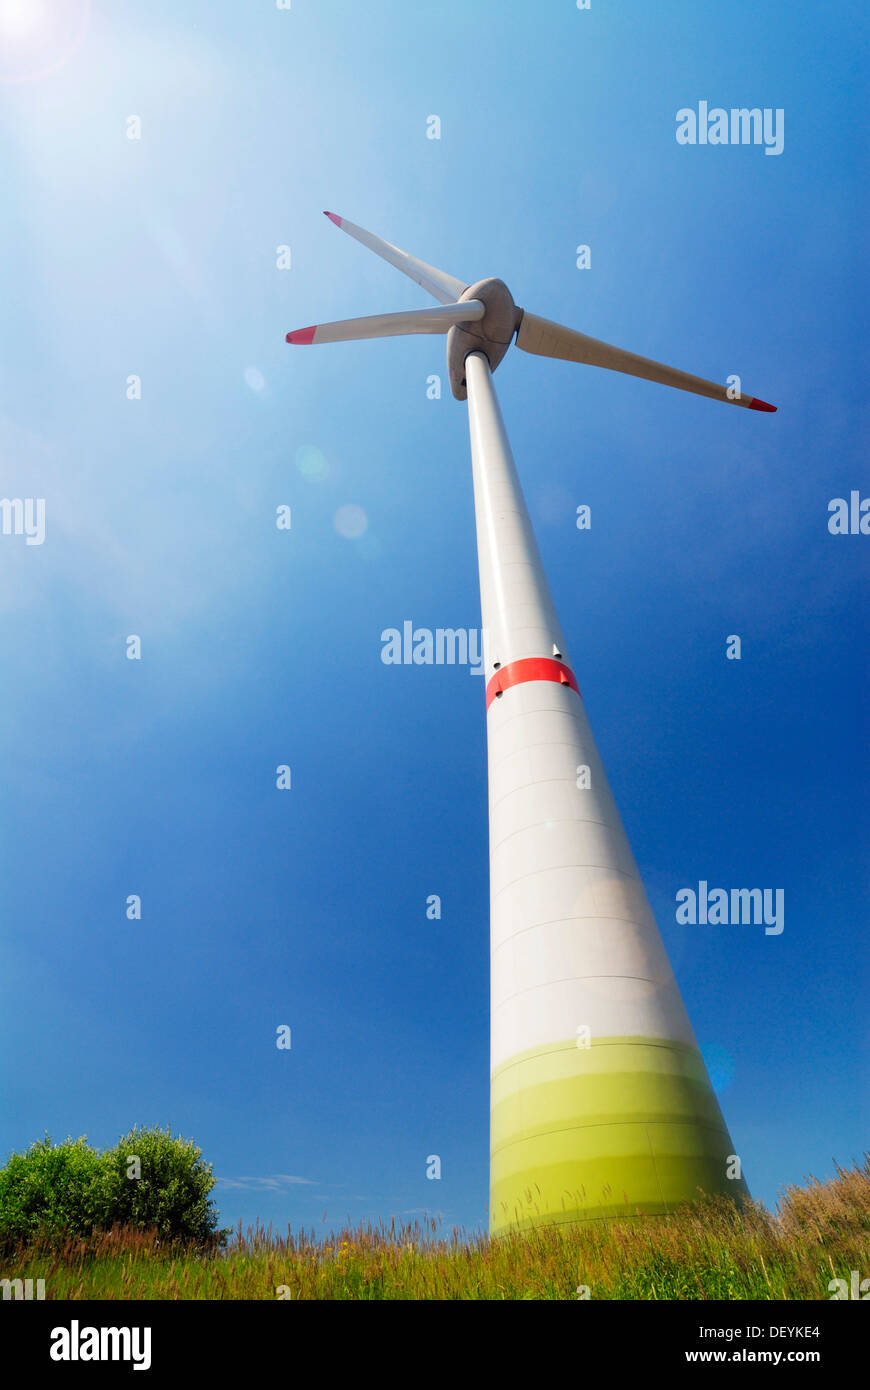 Wind turbine E-126, Enercon wind farm in Altenwerder, Hamburg Stock Photo